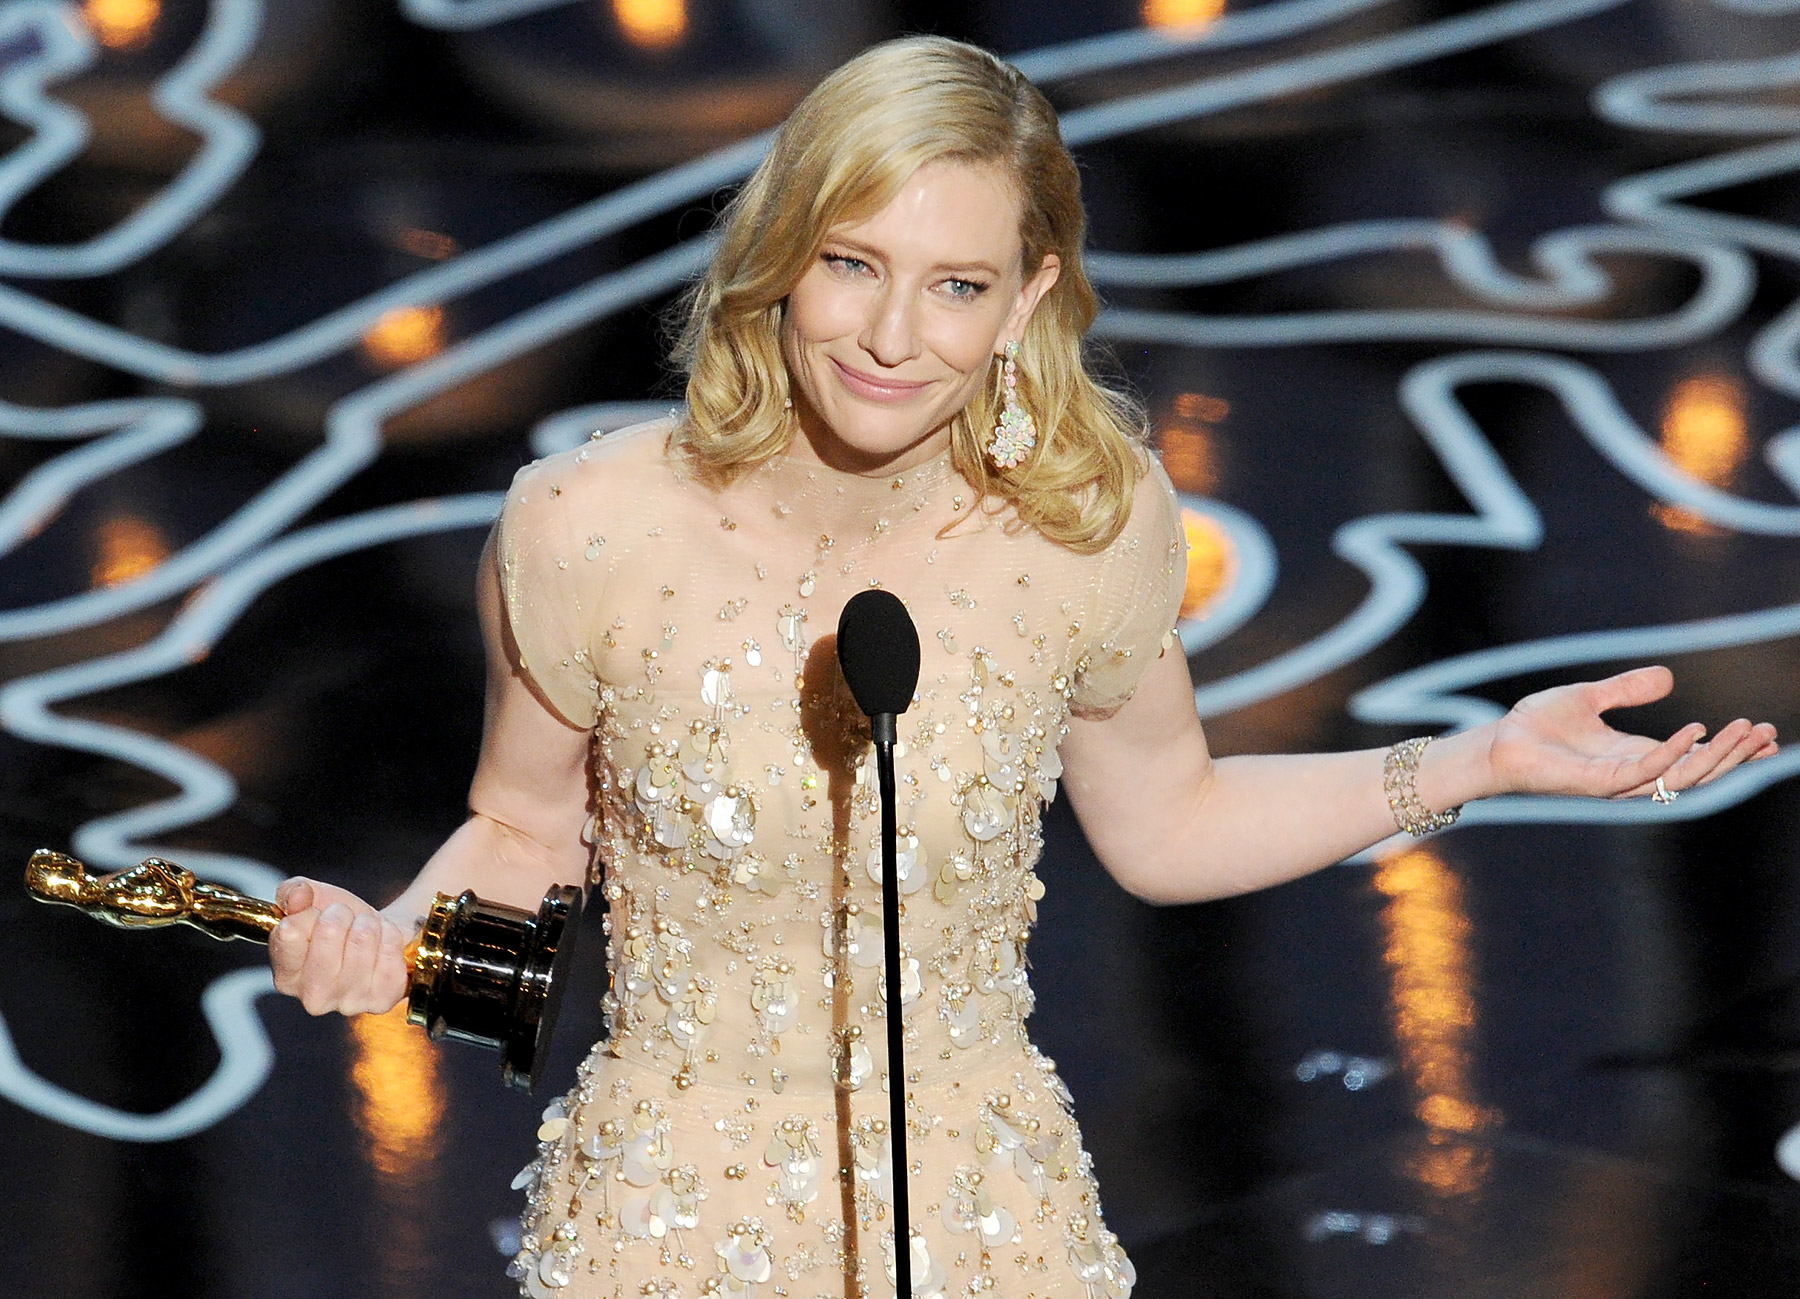 Cate Blanchett shines in 'Blue Jasmine' – The Mercury News